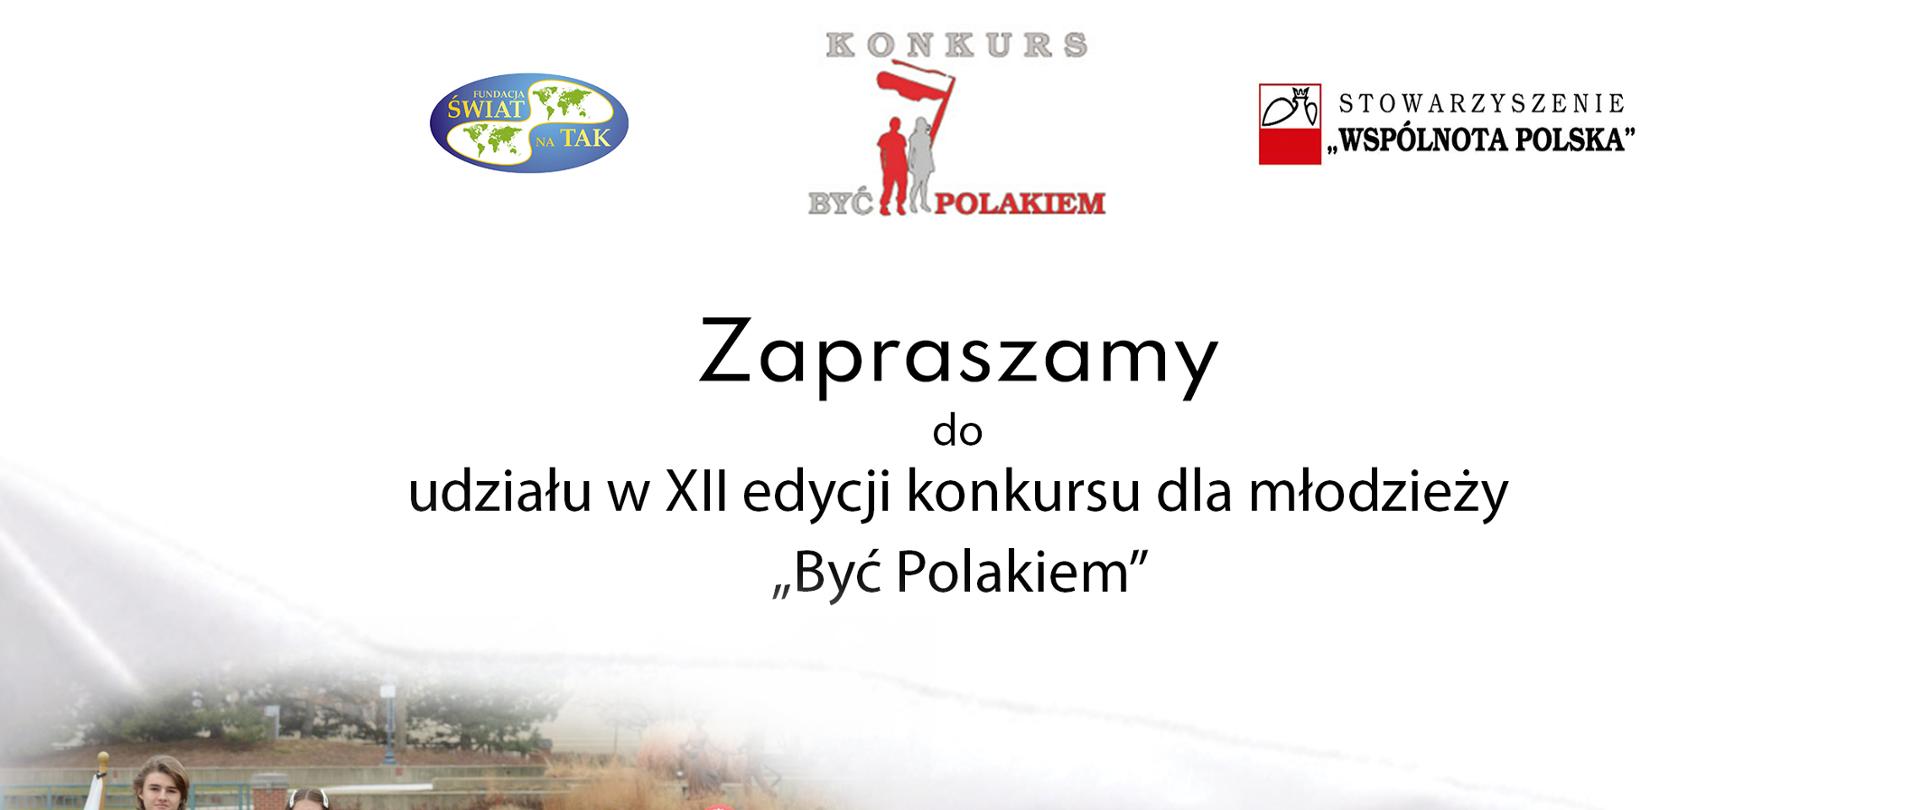 KONKURS "BYĆ POLAKIEM" - XII EDYCJA 2021 r.